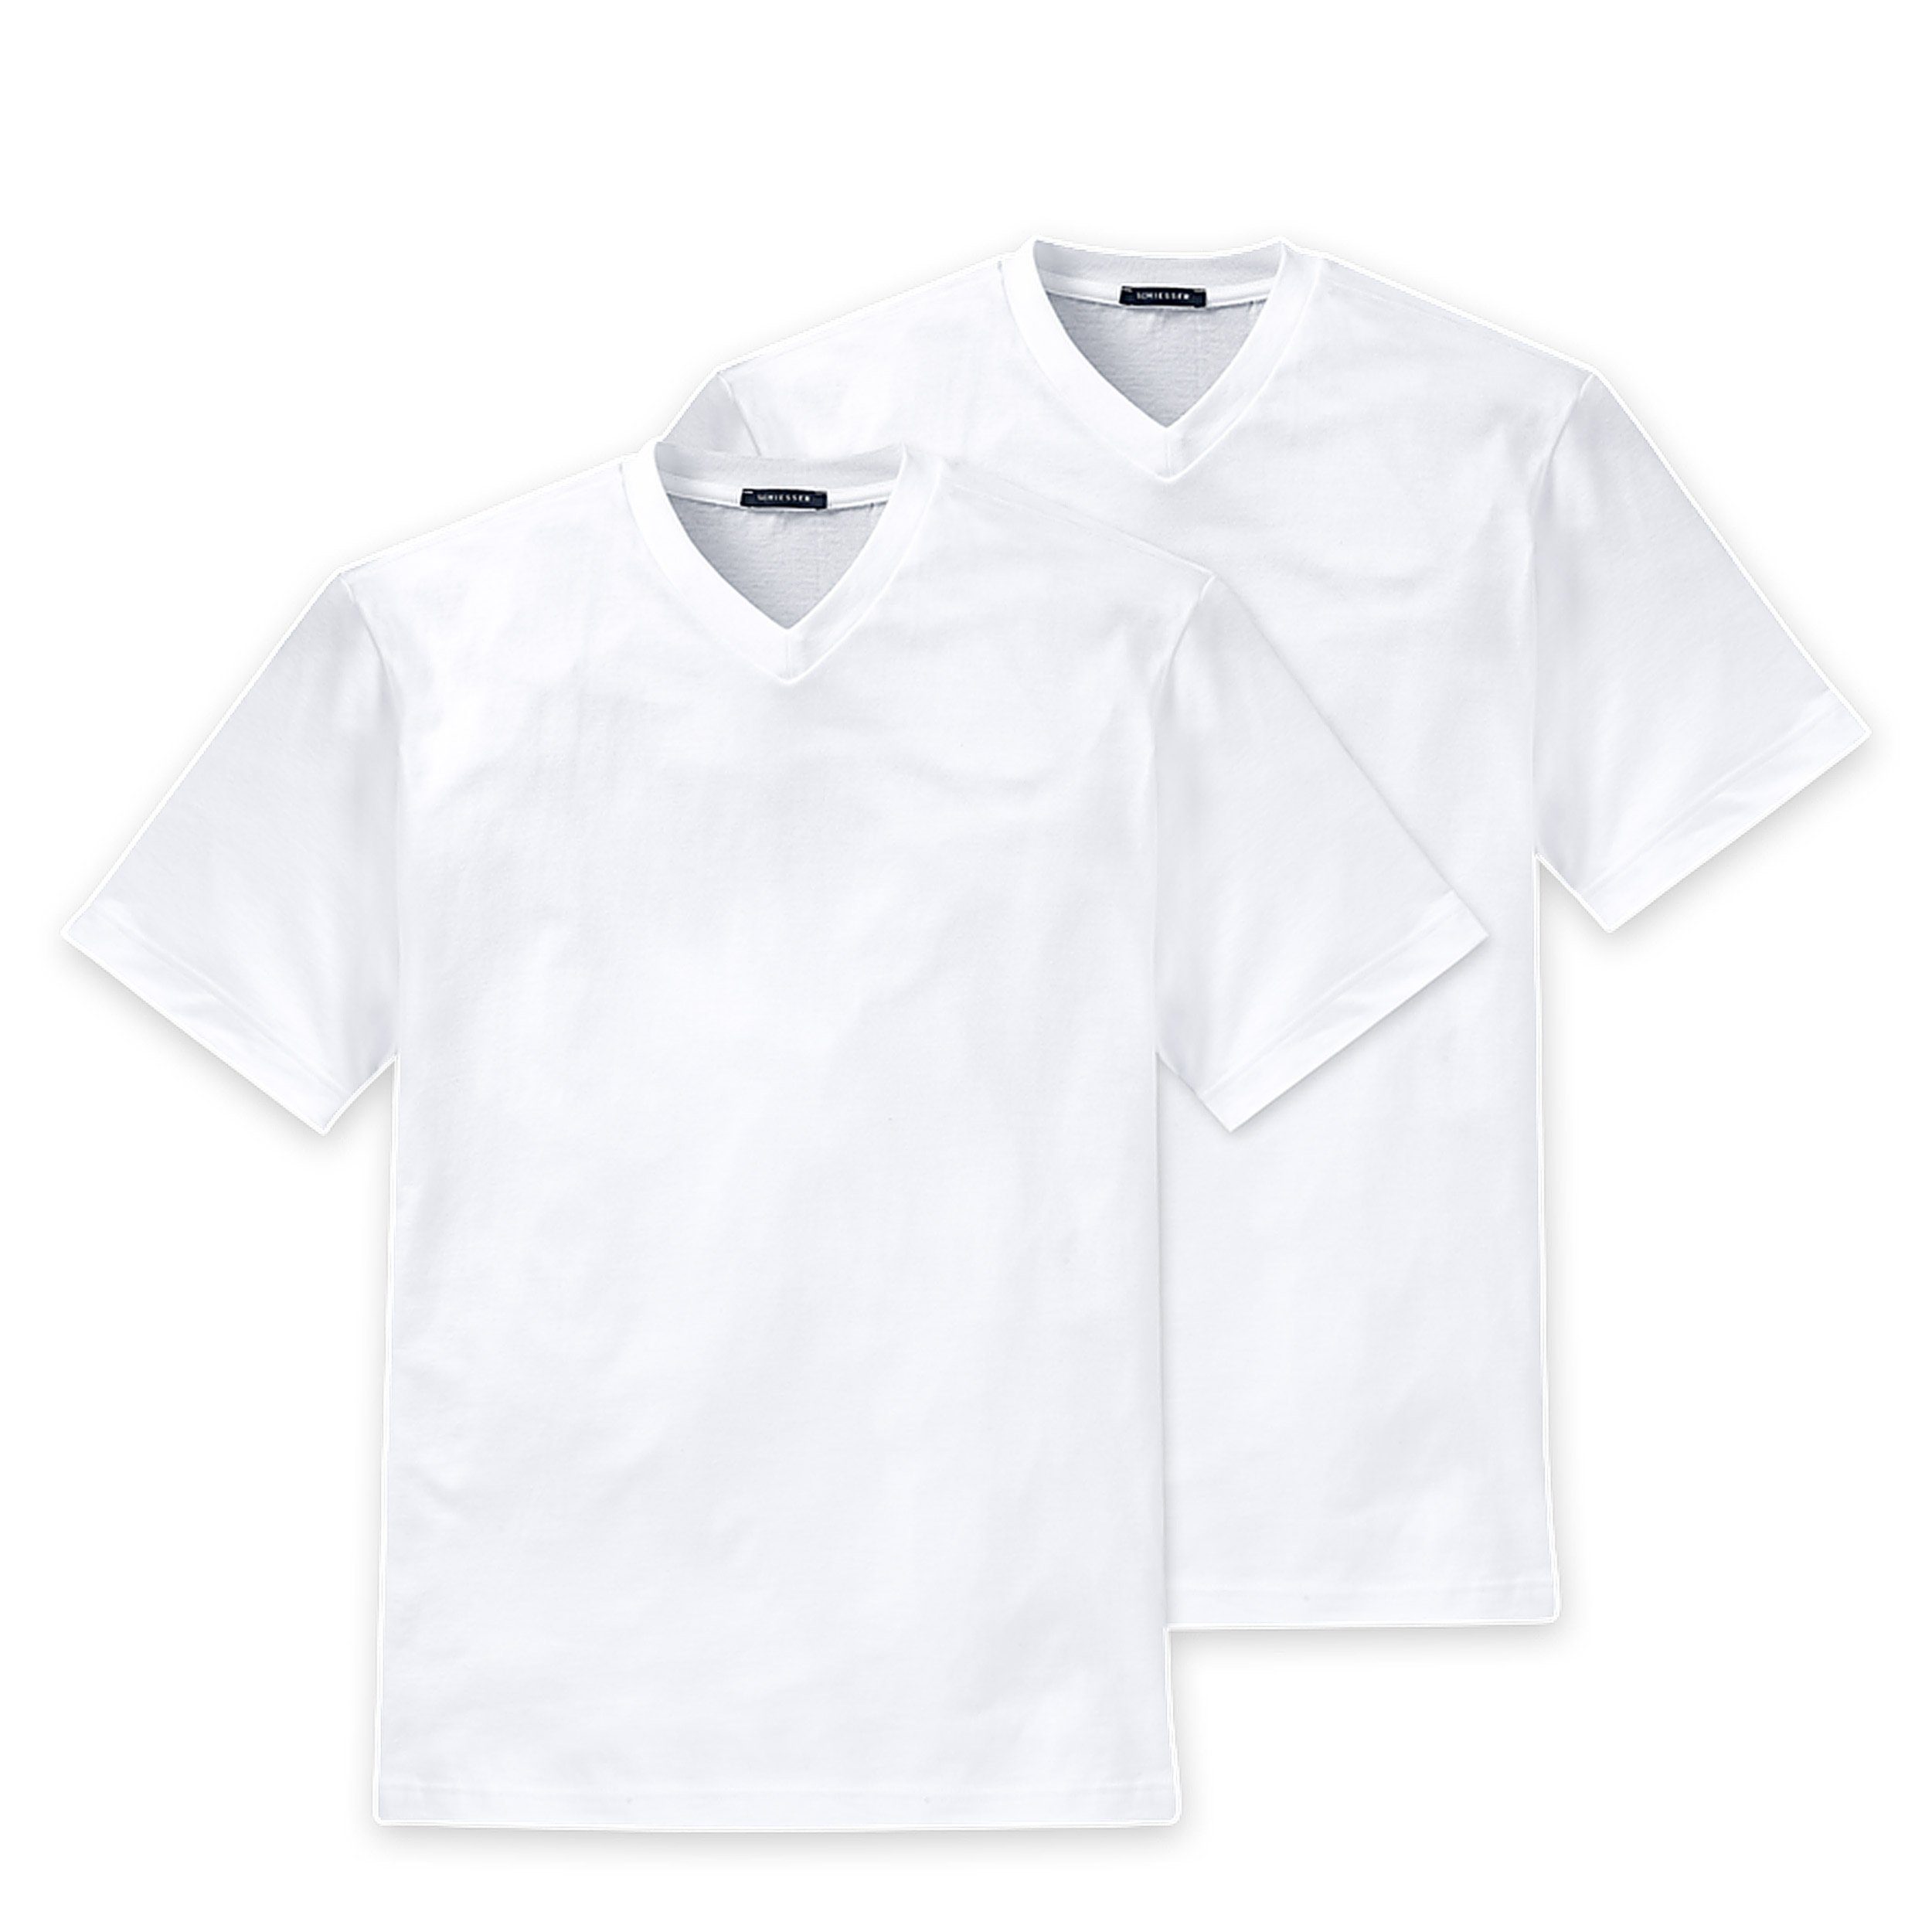 4-St., 4er-Pack) Schiesser American (100) Unterziehshirt Baumwolle T-Shirt Weiss Multipack - V-Ausschnitt (Spar-Pack, reine